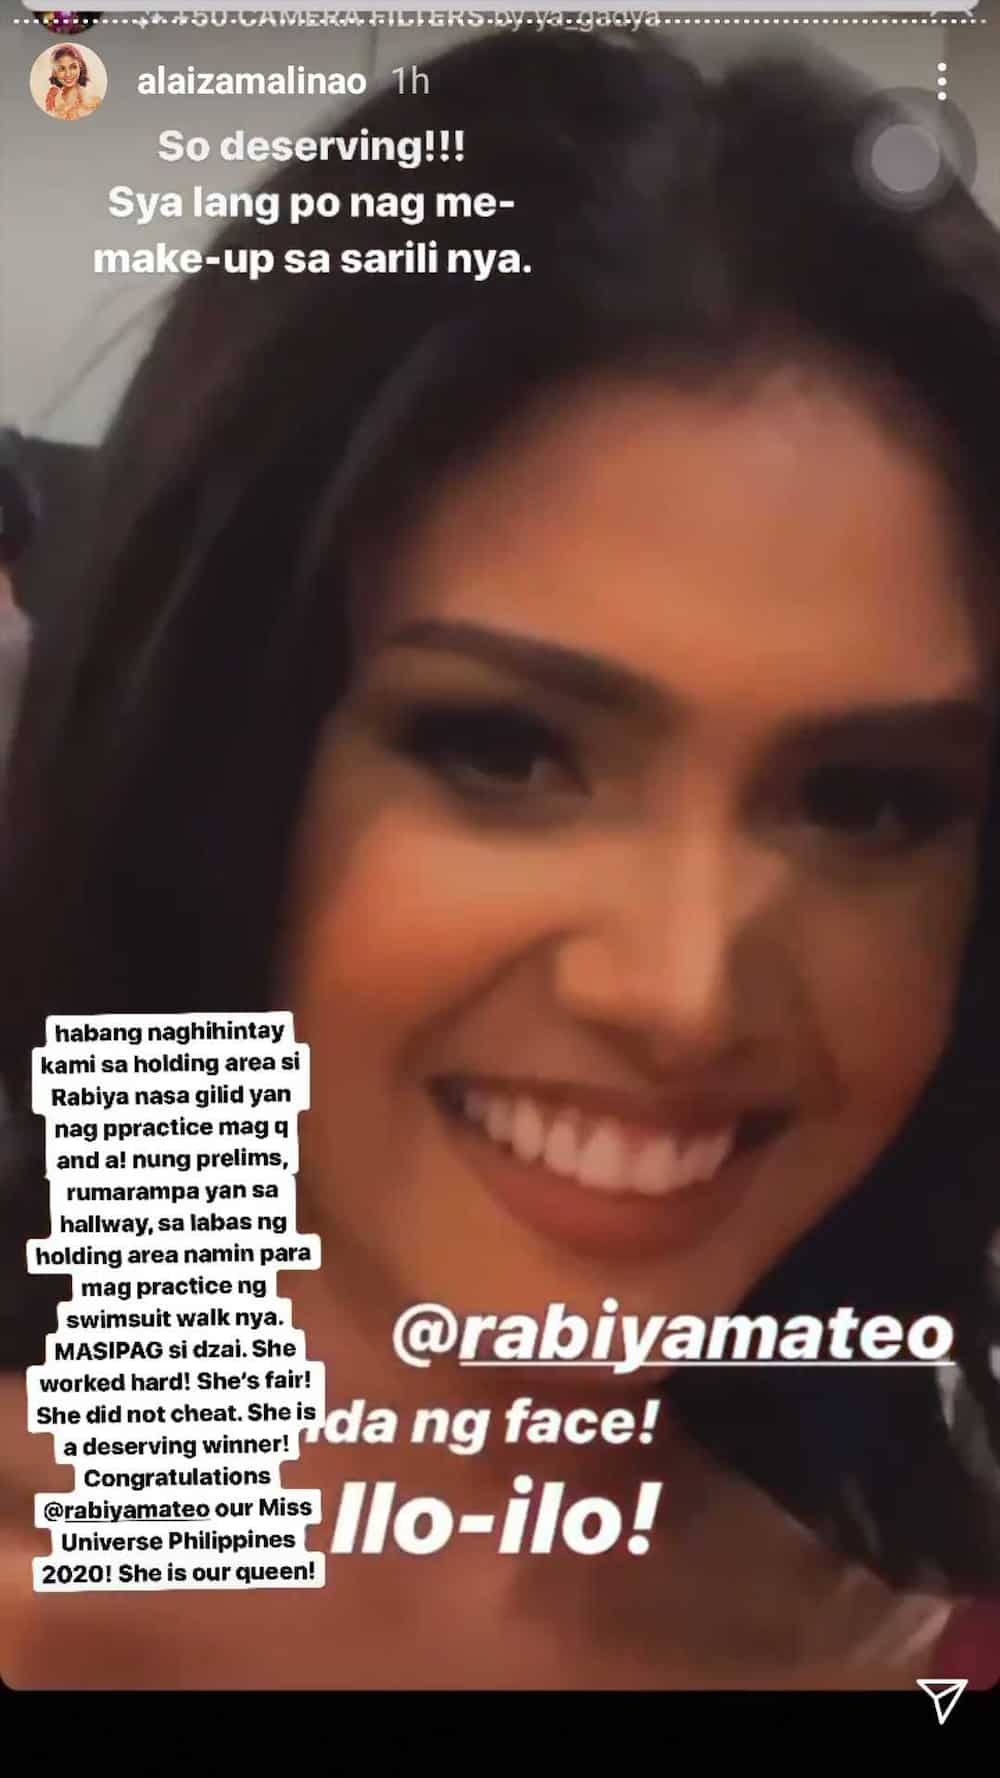 Miss Davao Alaiza Malinao, ipinagtanggol si Miss Universe Philippines 2020 Rabiya Mateo